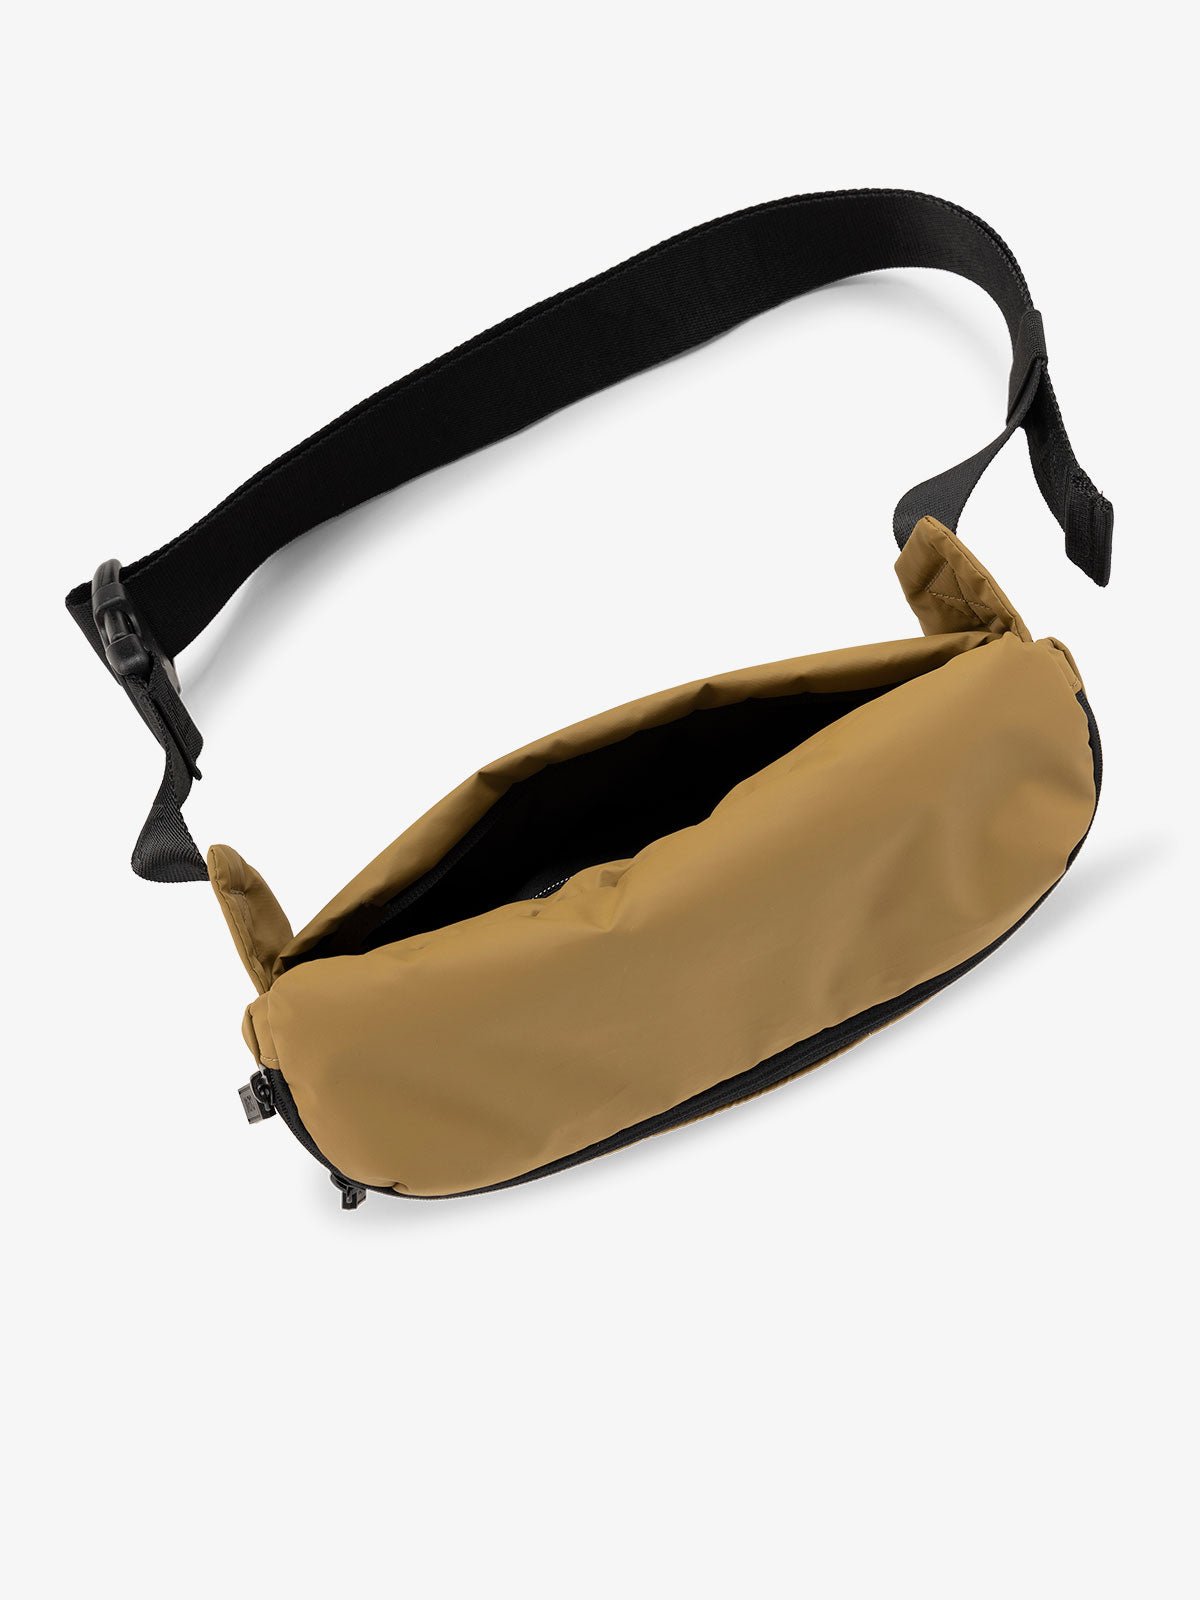 CALPAK Luka Belt Bag with adjustable strap and hidden back pocket in khaki brown